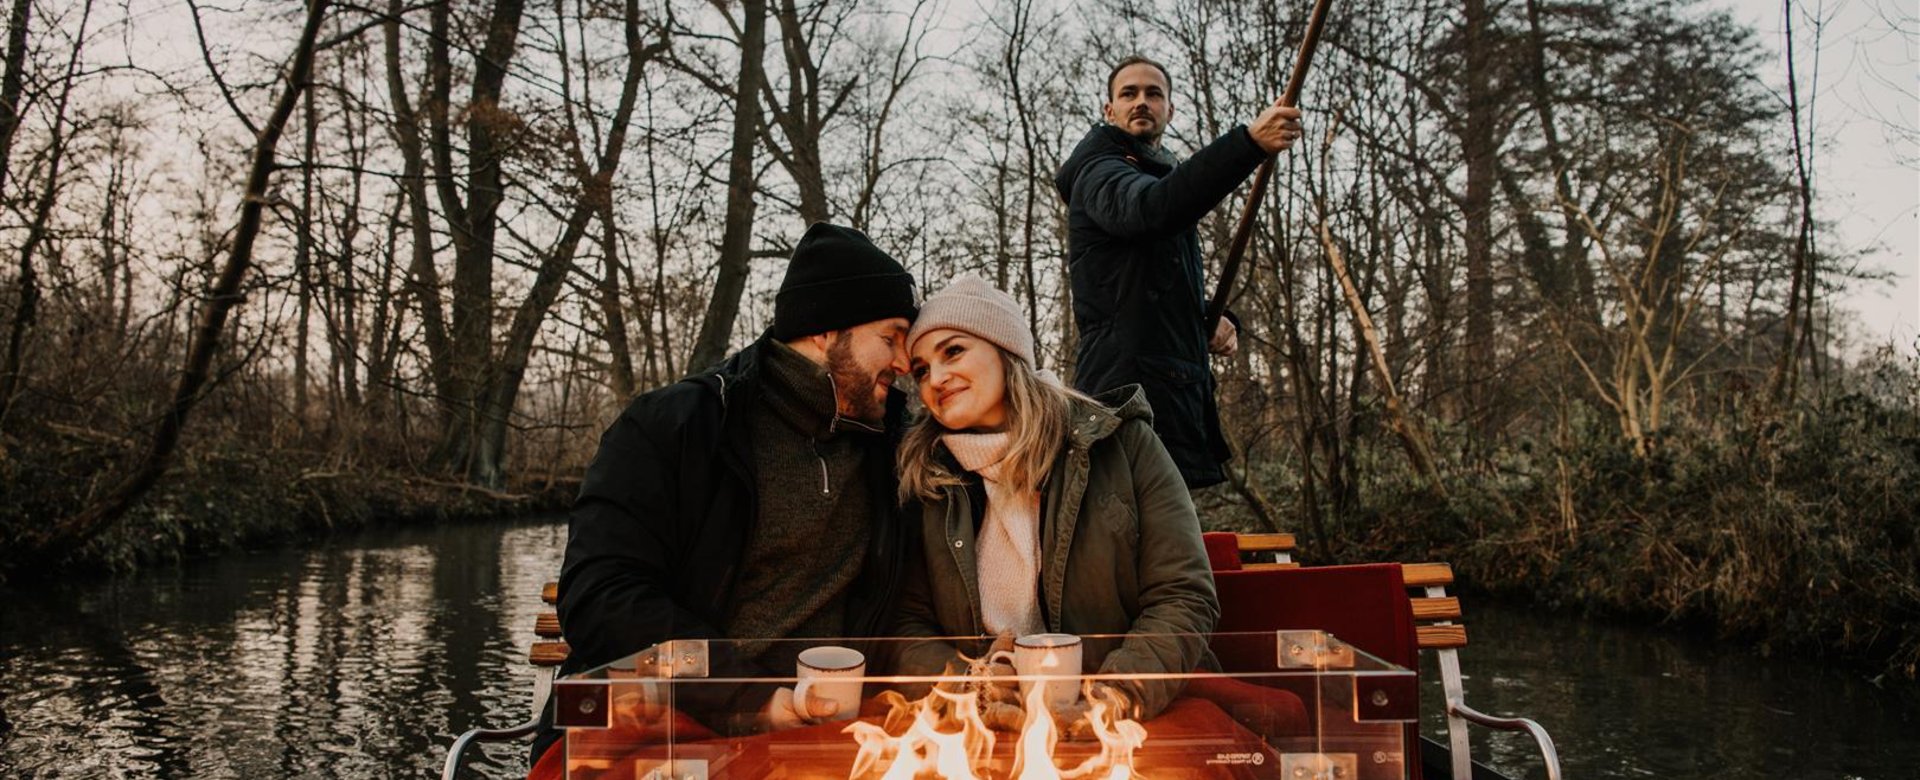 Ein Paar sitzt im Winter auf einem Kahn vor einem Kaminfeuer und wird durch den Spreewald gefahren.